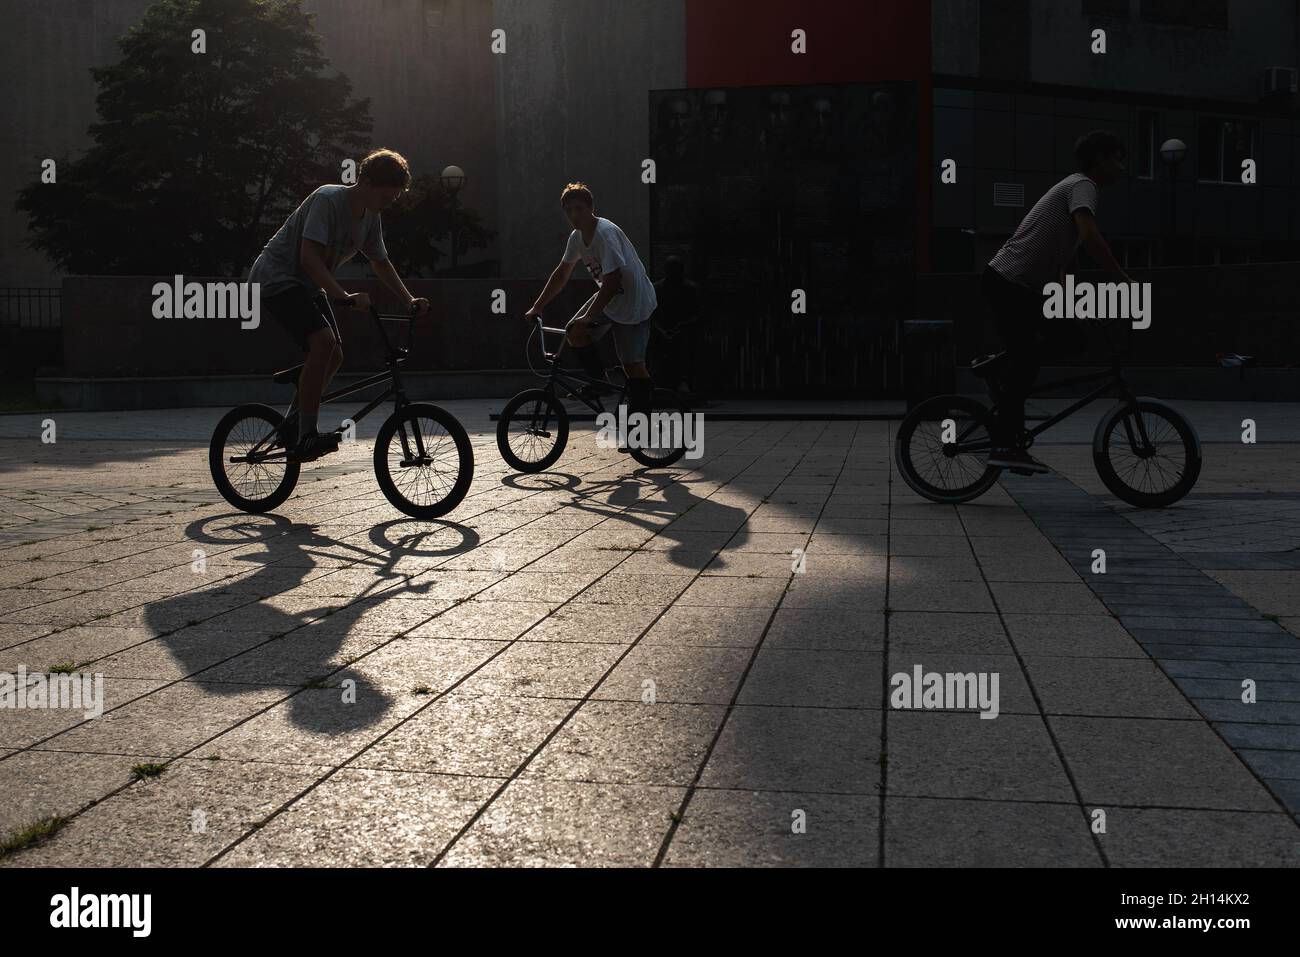 Perfil silueta de chicos en BMX bicicletas al aire libre contra la puesta de sol. Los jóvenes se dedican al deporte activo. Libre estilo BMX. Foto de stock